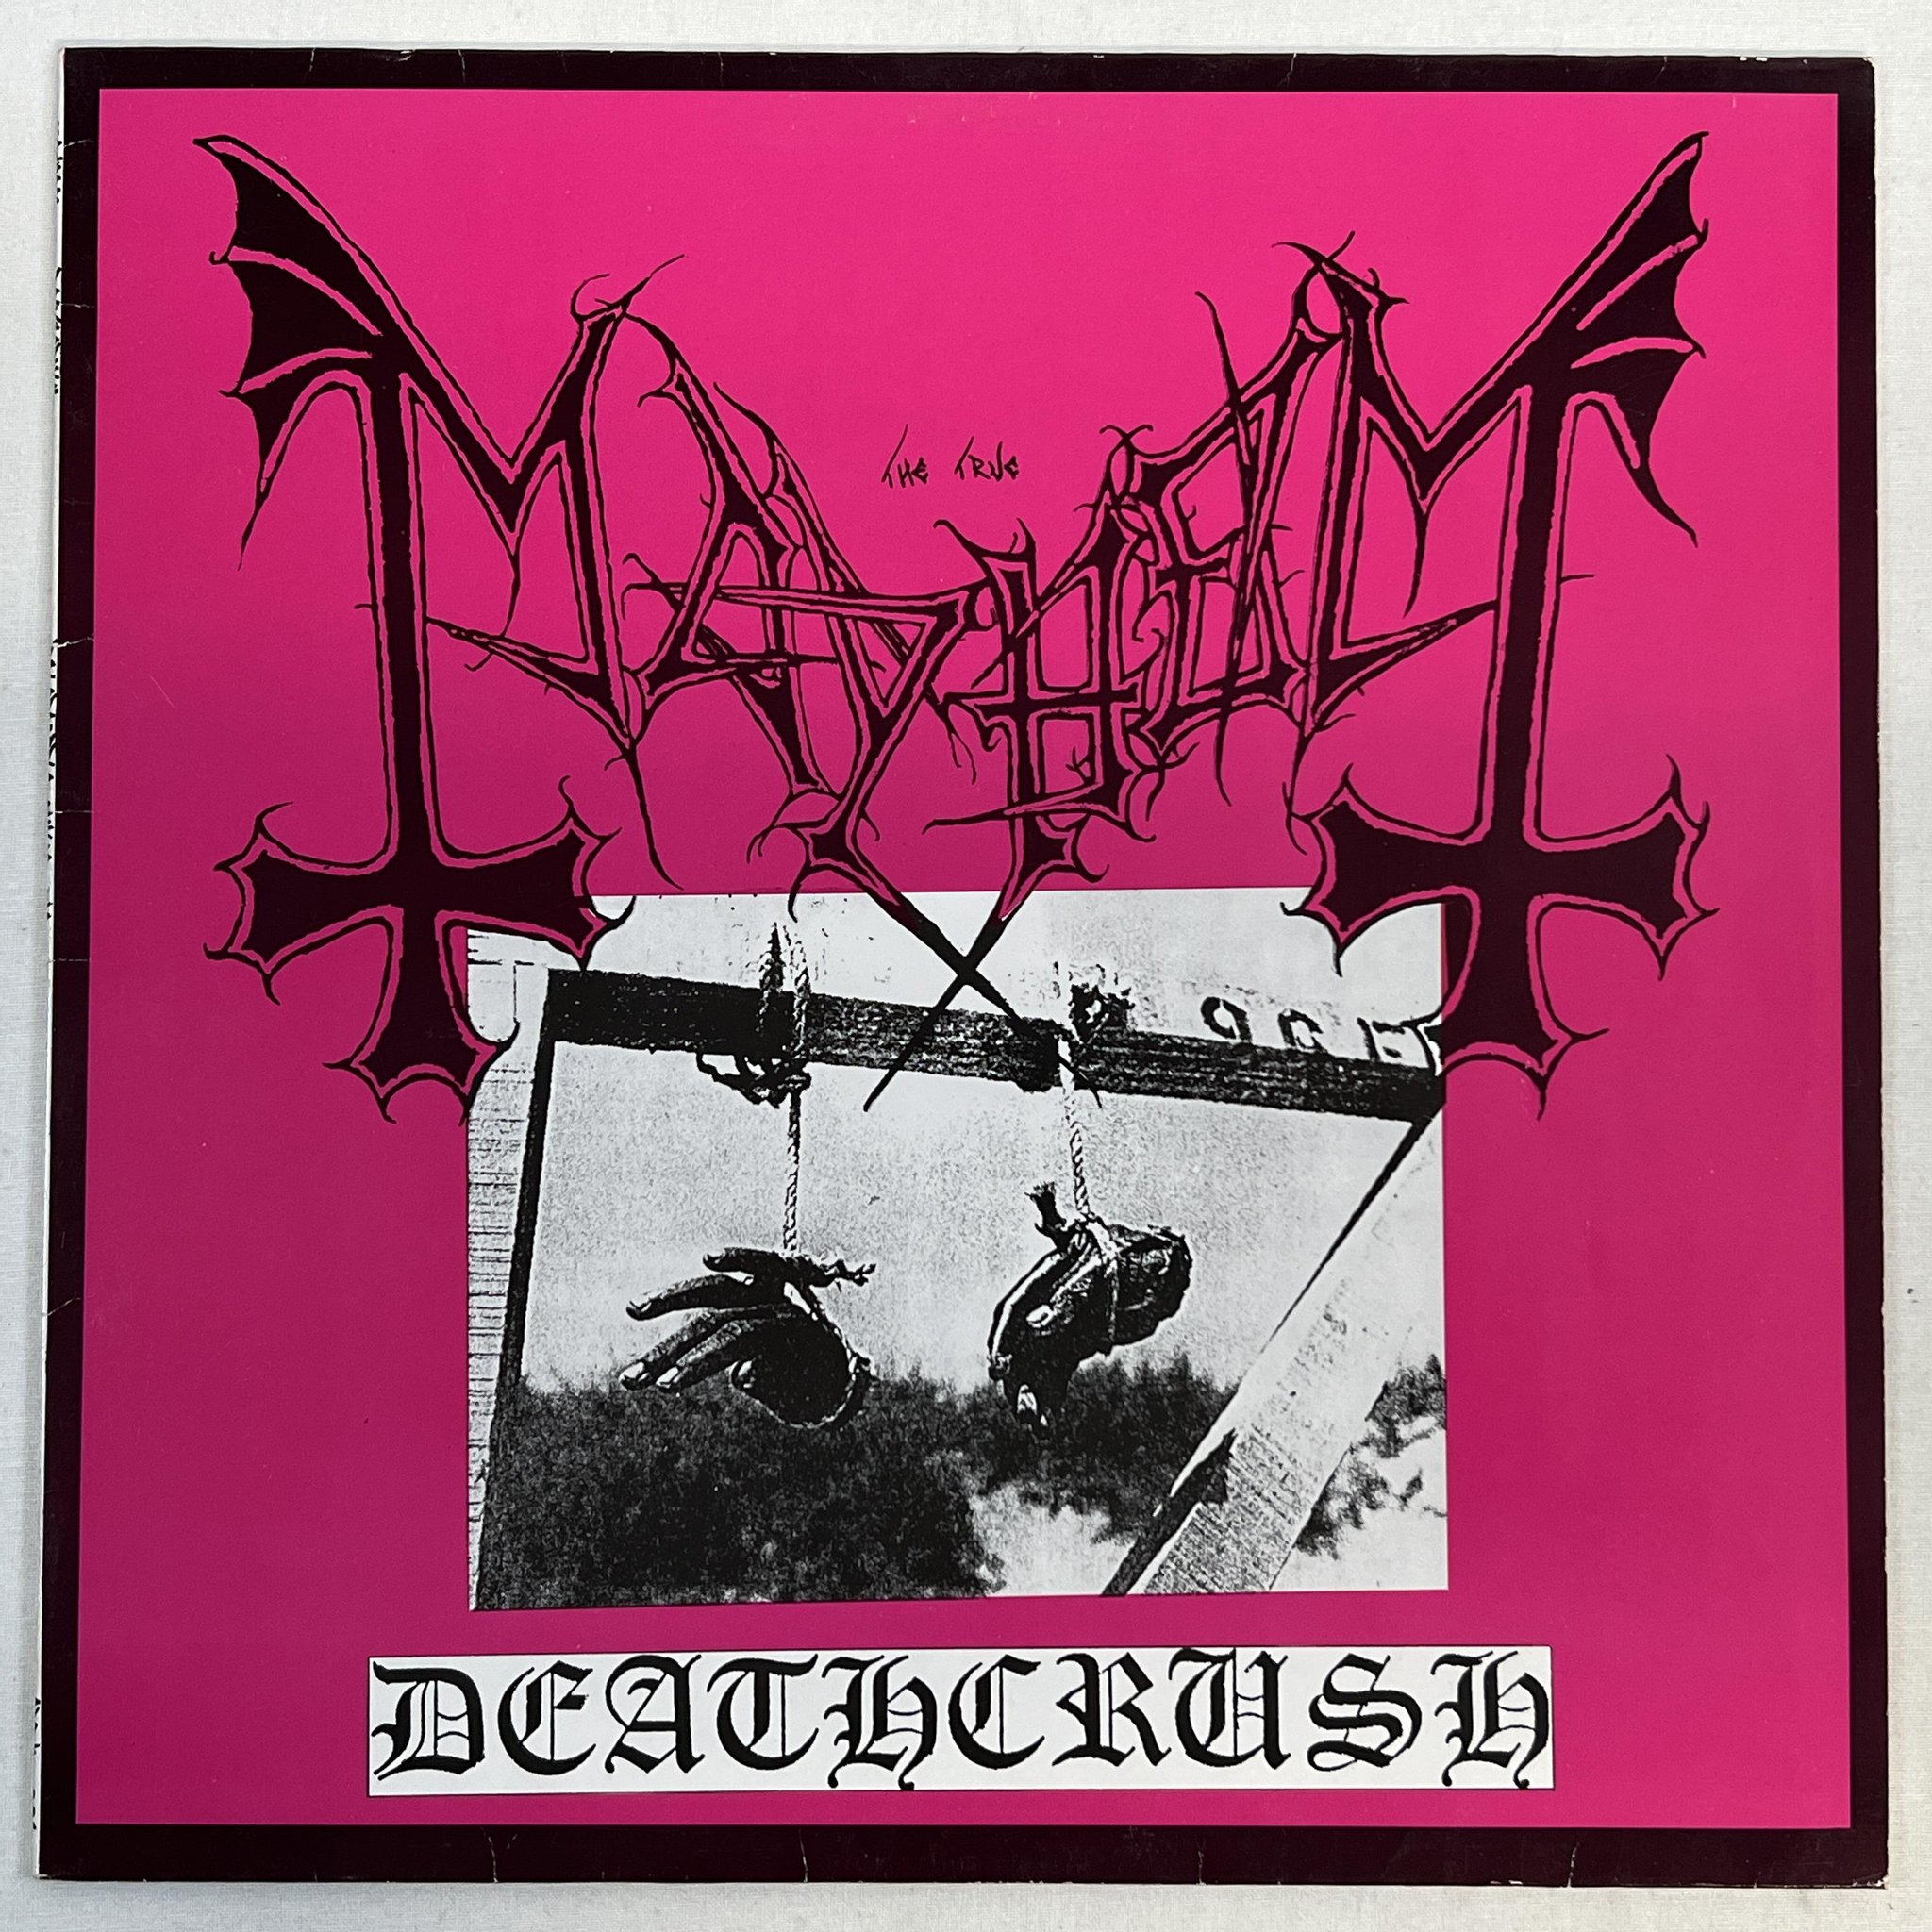 Omslagsbild för skivan MAYHEM Deathcrush MINI-ALBUM -87 Norway ** ULTRA RARE DEATH METAL MONSTER **